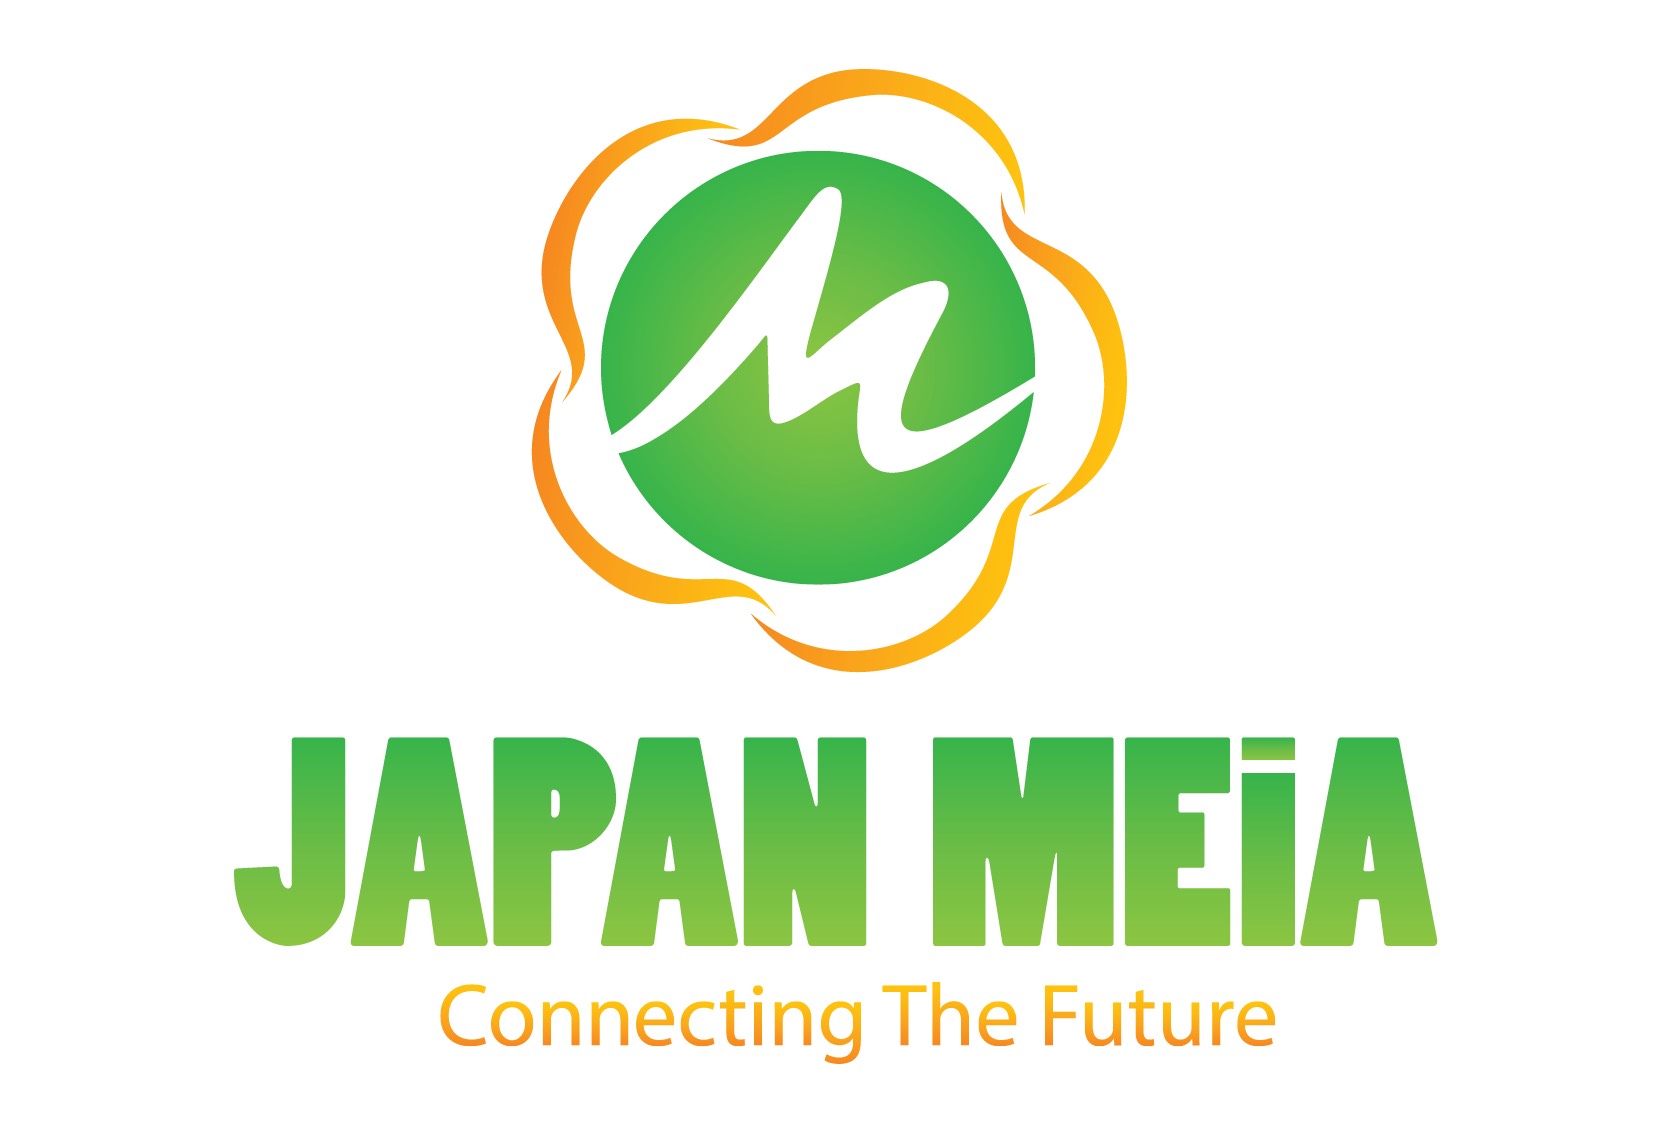 JAPAN MEIA 株式会社